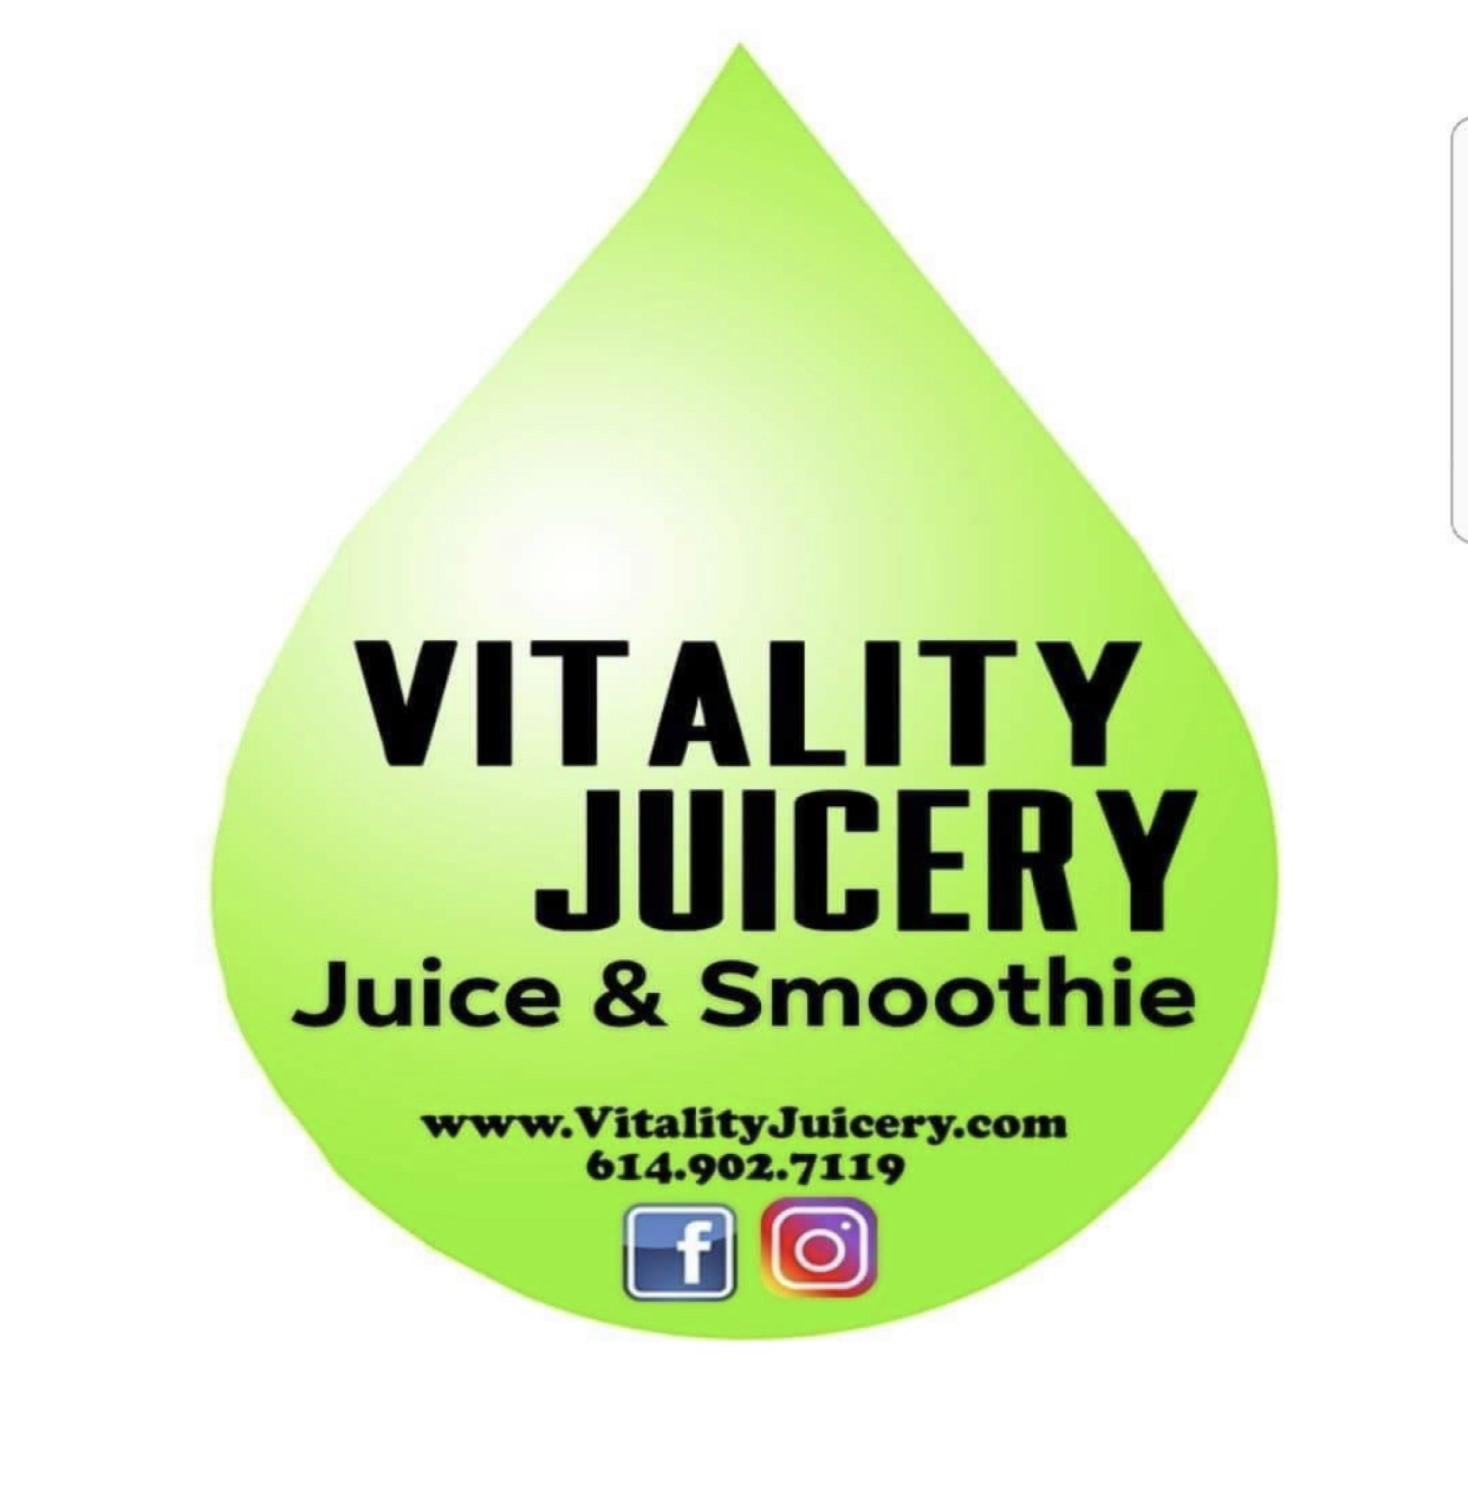 Vitality Juicery Dublin